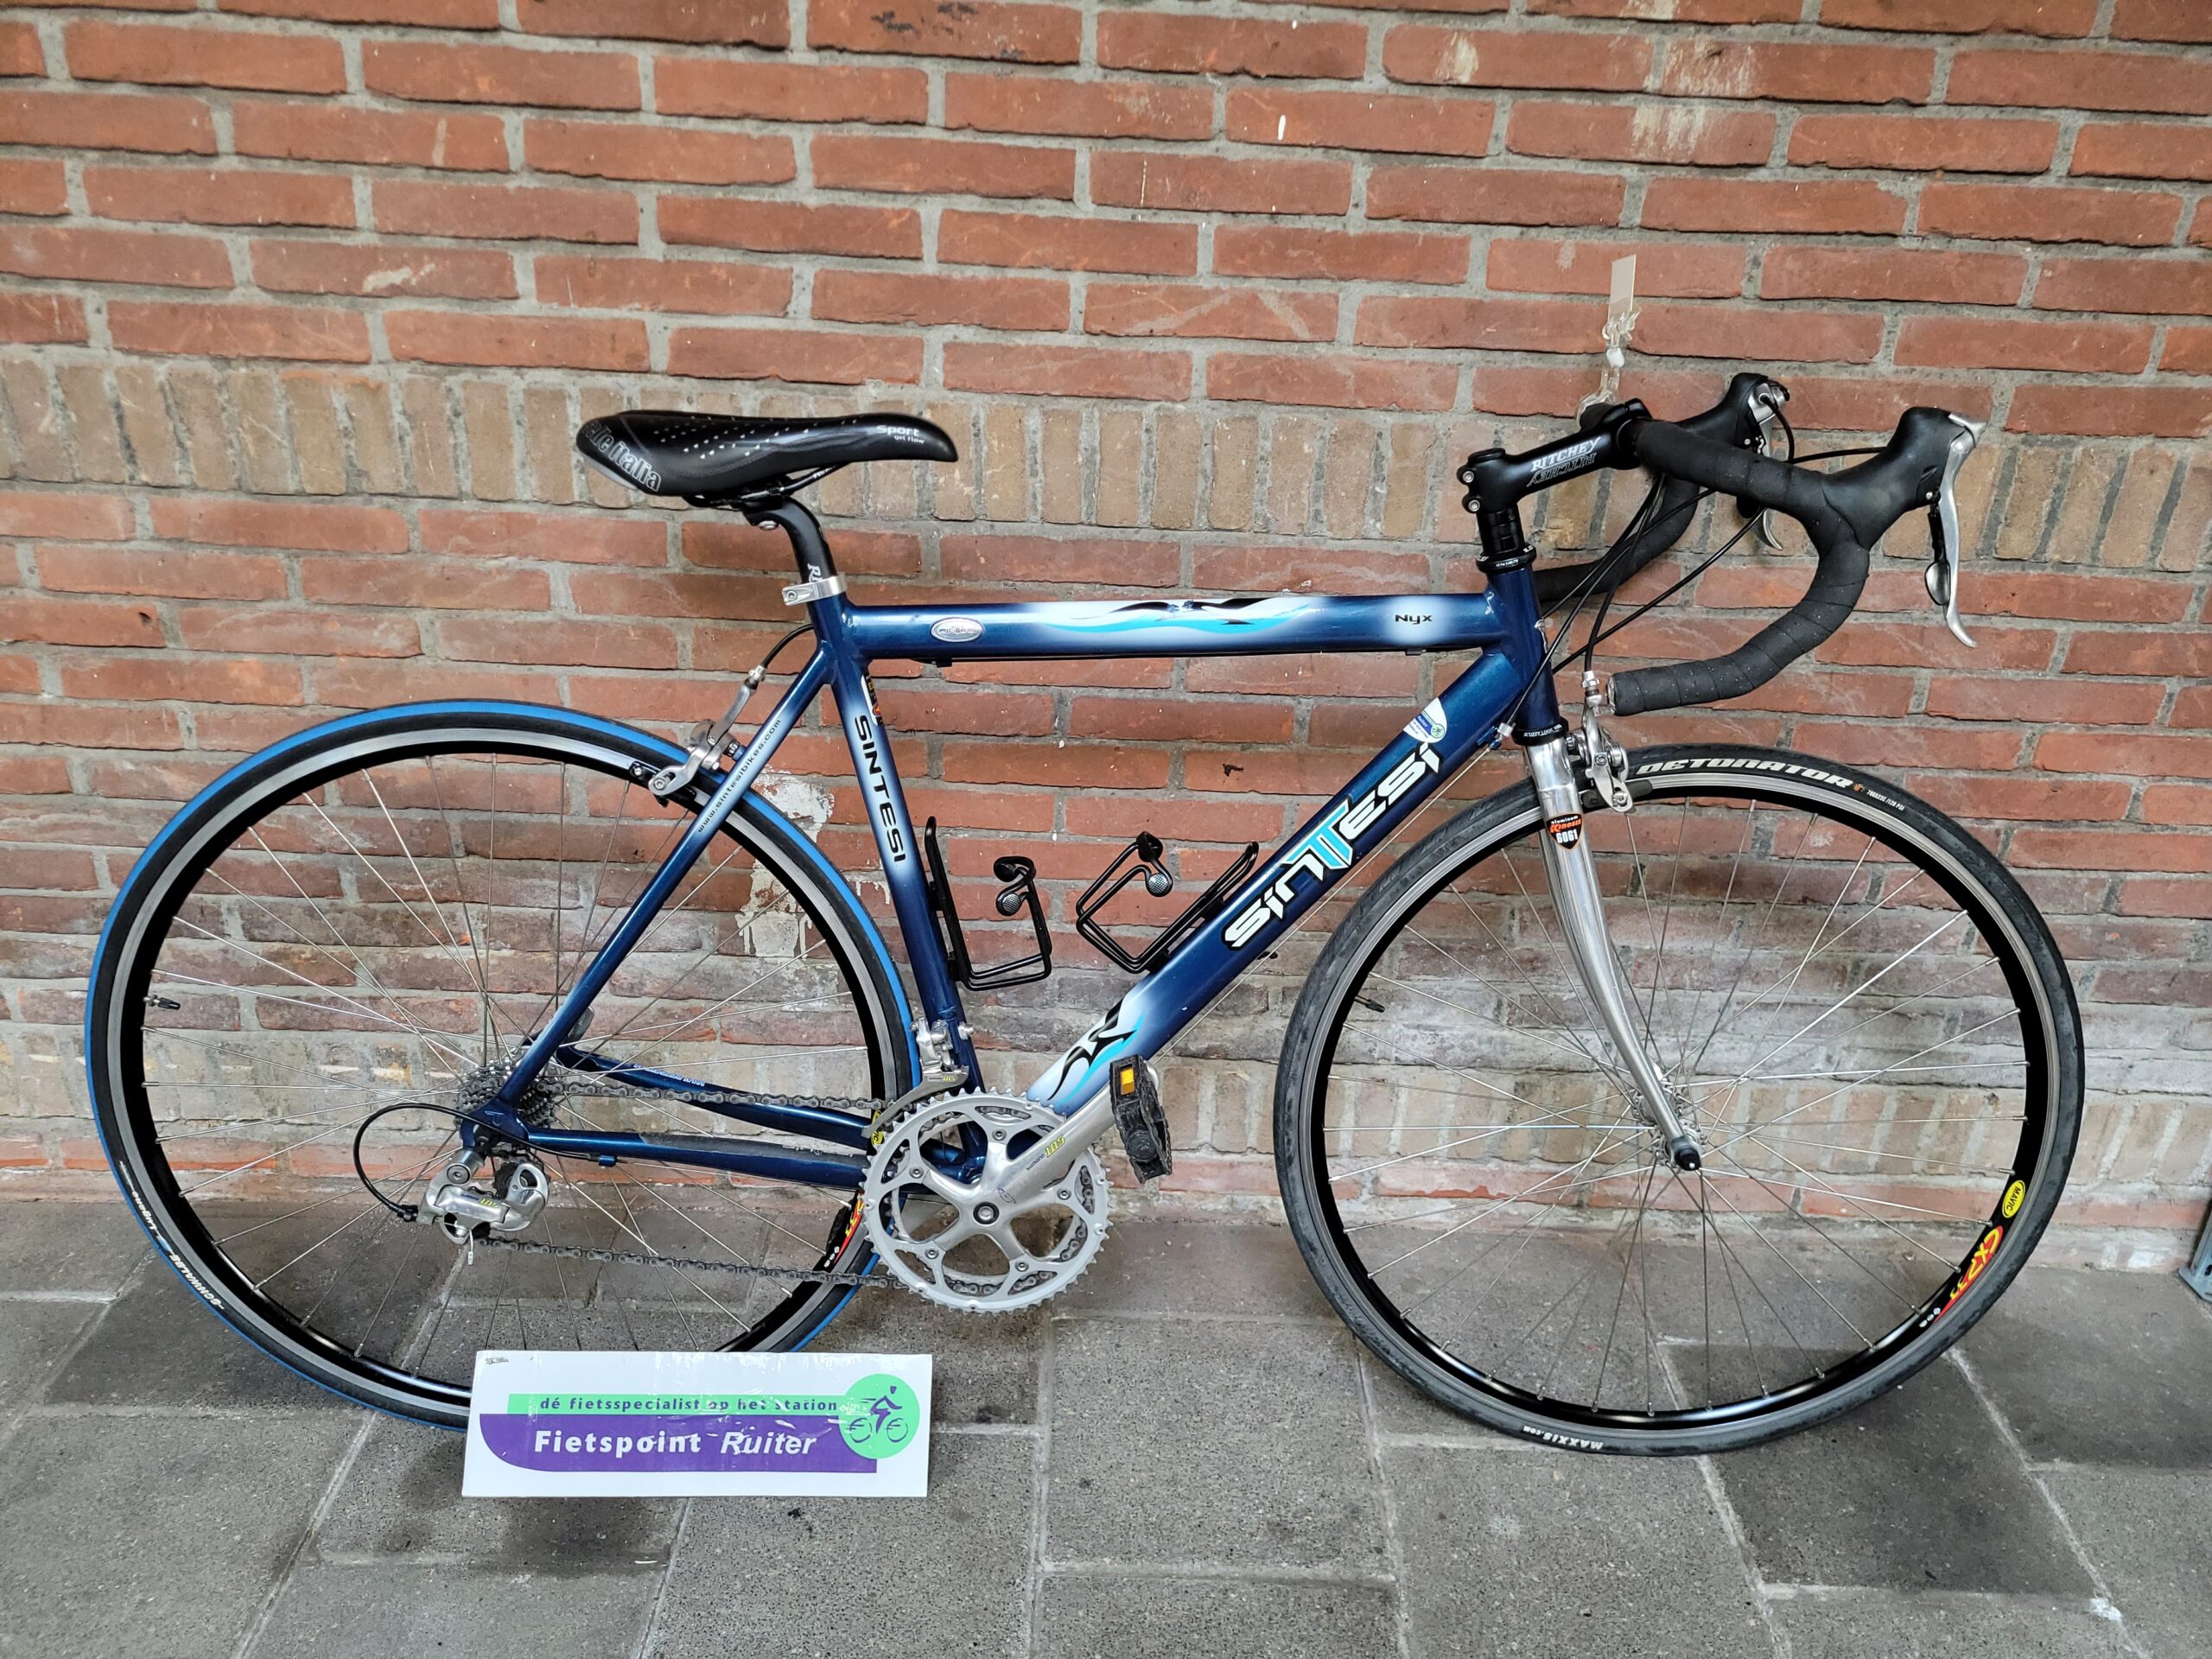 Fietspoint Ruiter - Uw one-stop fietsspecialist op Station Hoorn!